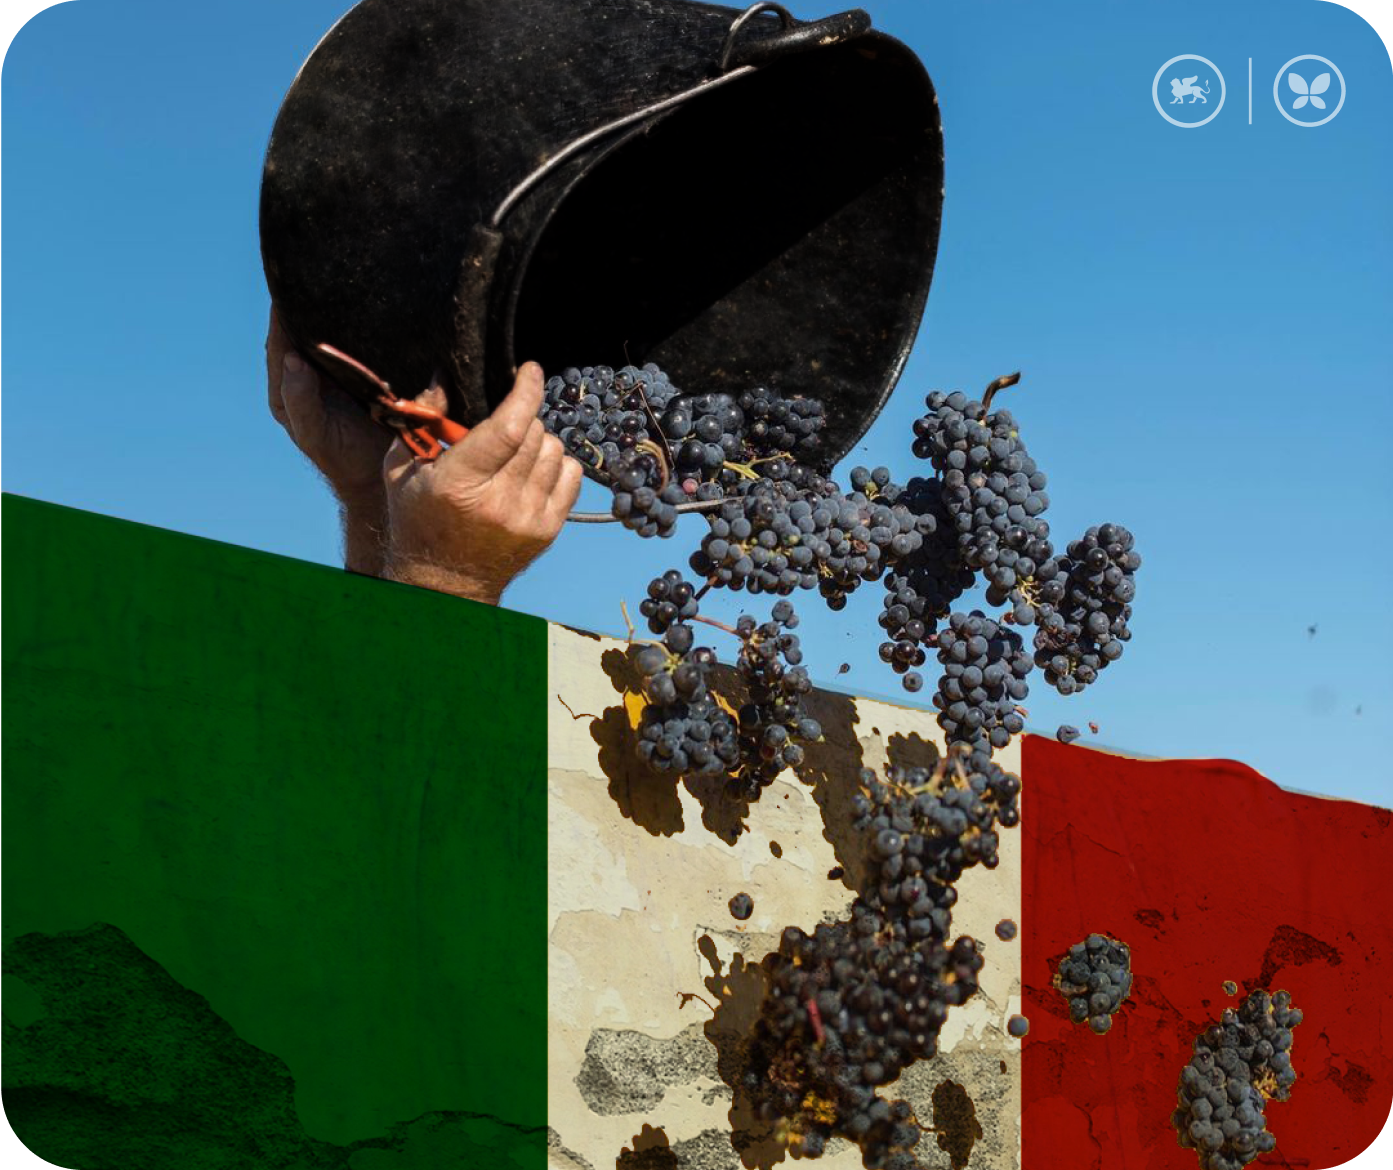 Собранный вручную виноград Глера в ведре рядом со стеной, окрашенной в цвета итальянского флага.